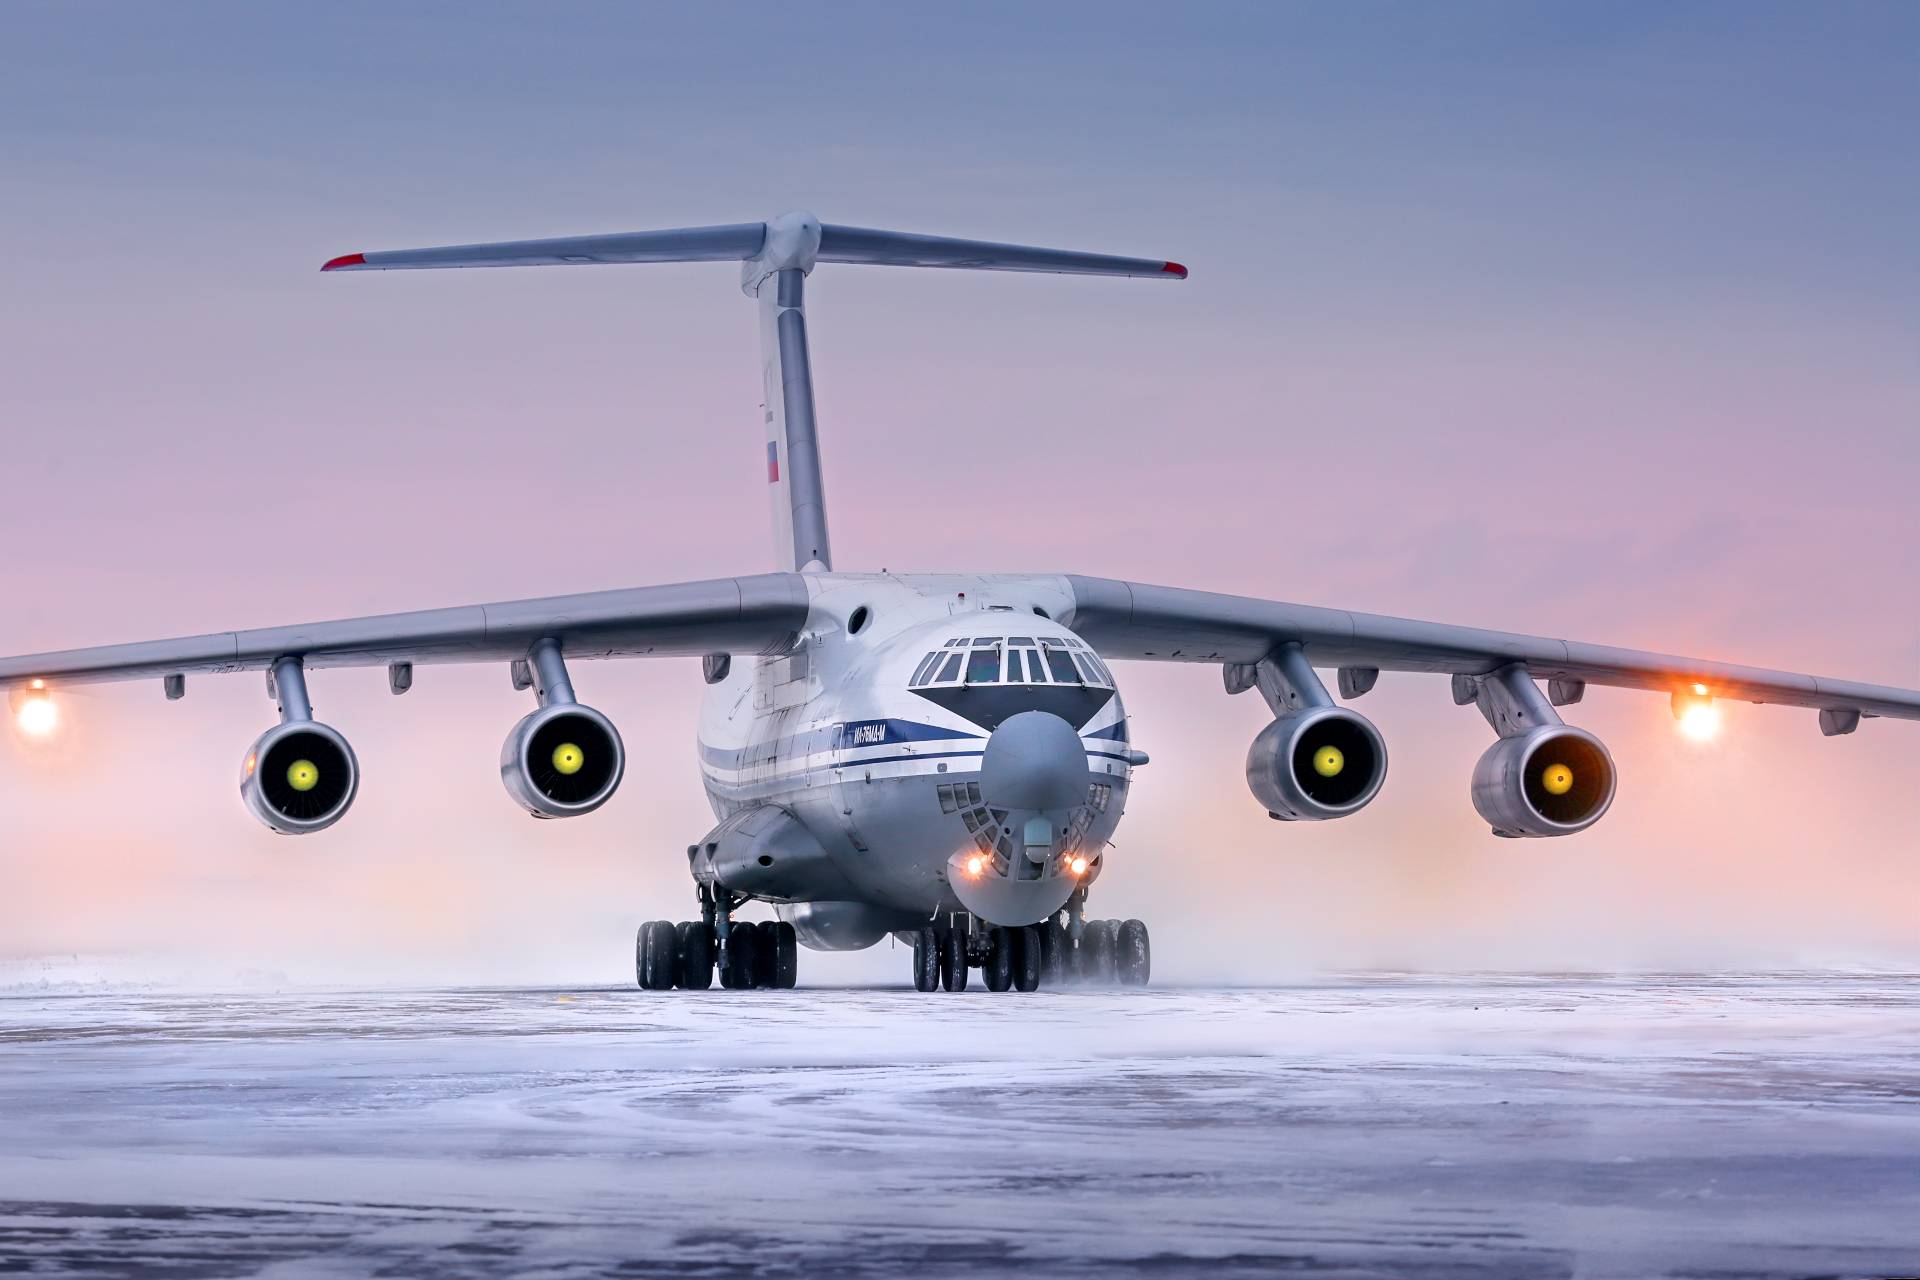 Самолет ил-76: летно-технические характеристики